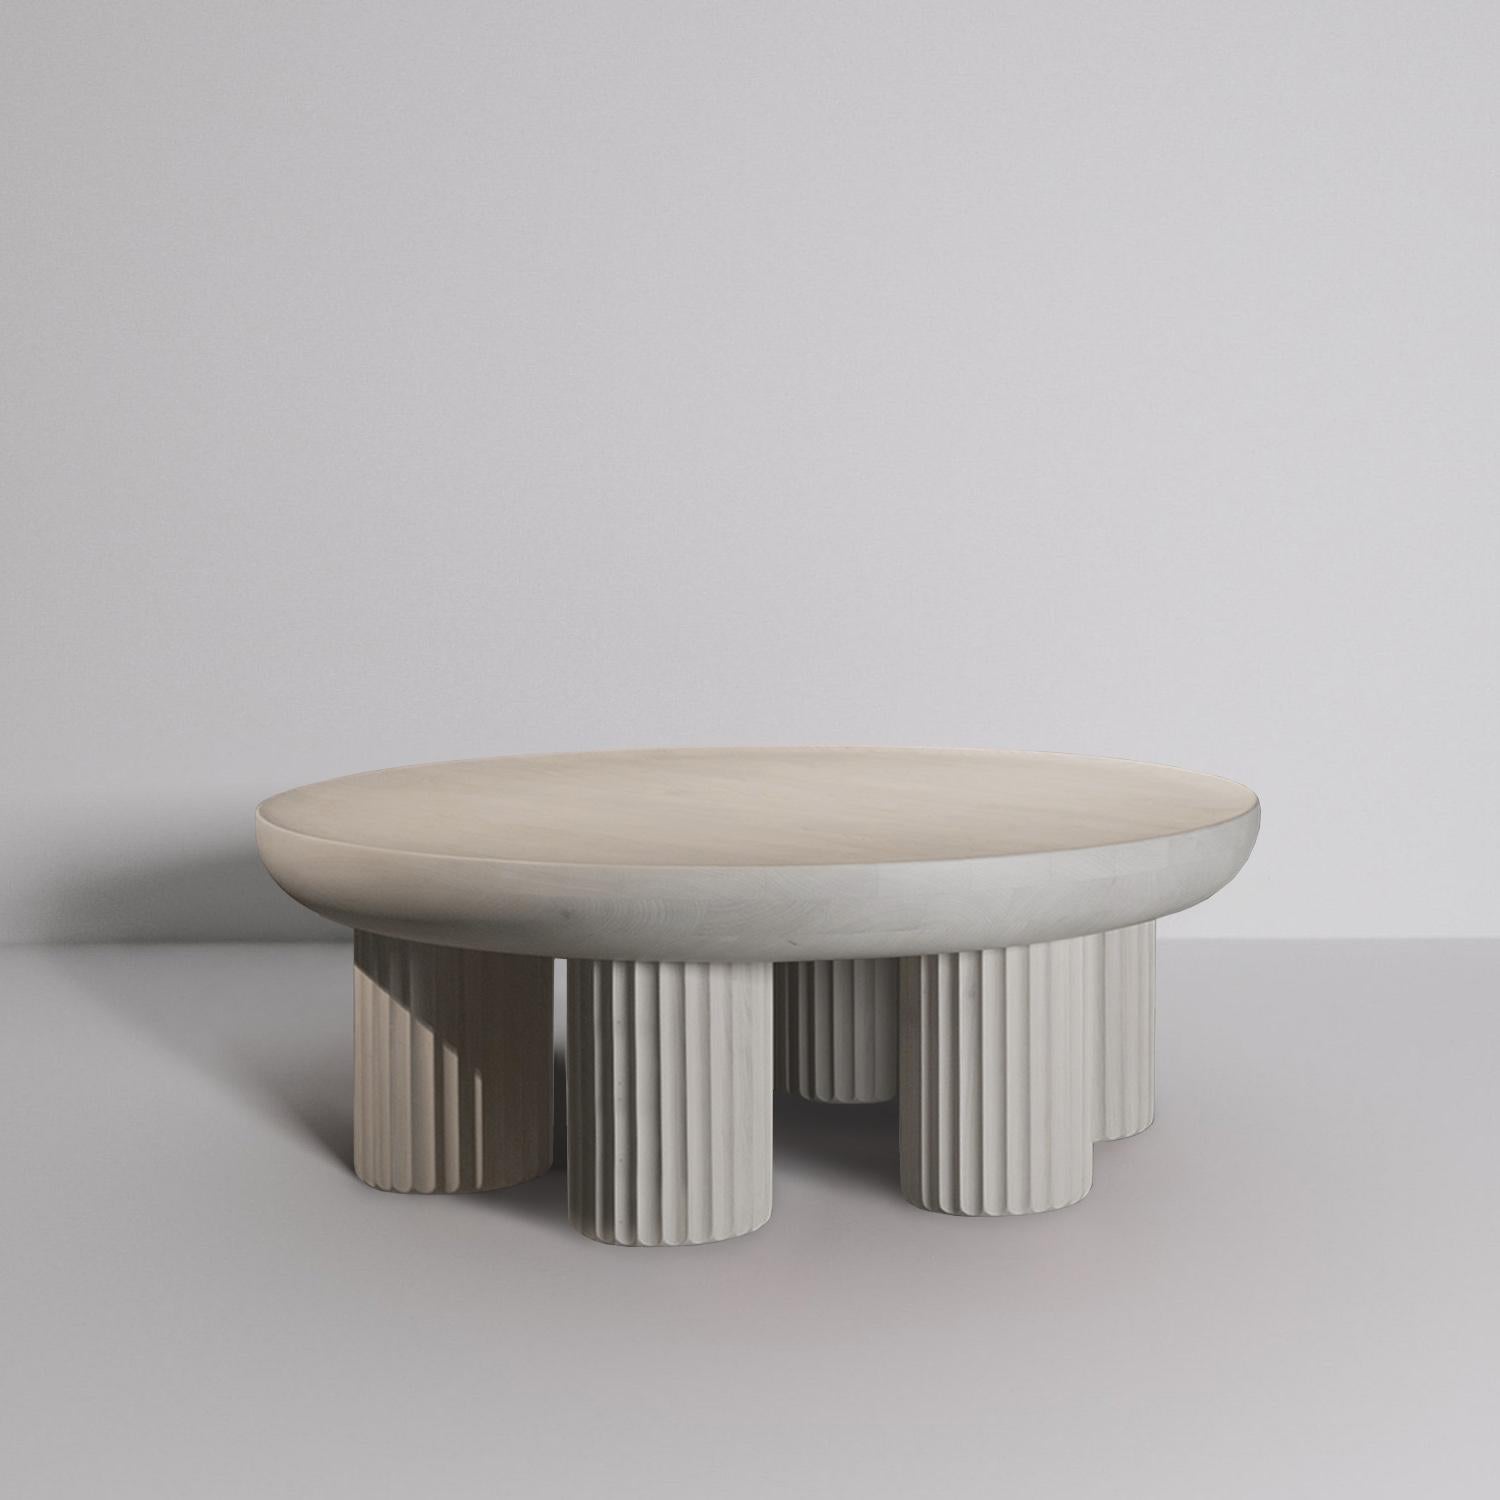 Les tables basses présentées font partie de la collection ECLECTICISM, dans laquelle le designer recherche la relation entre l'histoire et le présent. Chaque pièce de la collection s'inspire vaguement d'un style ou d'un mouvement particulier du